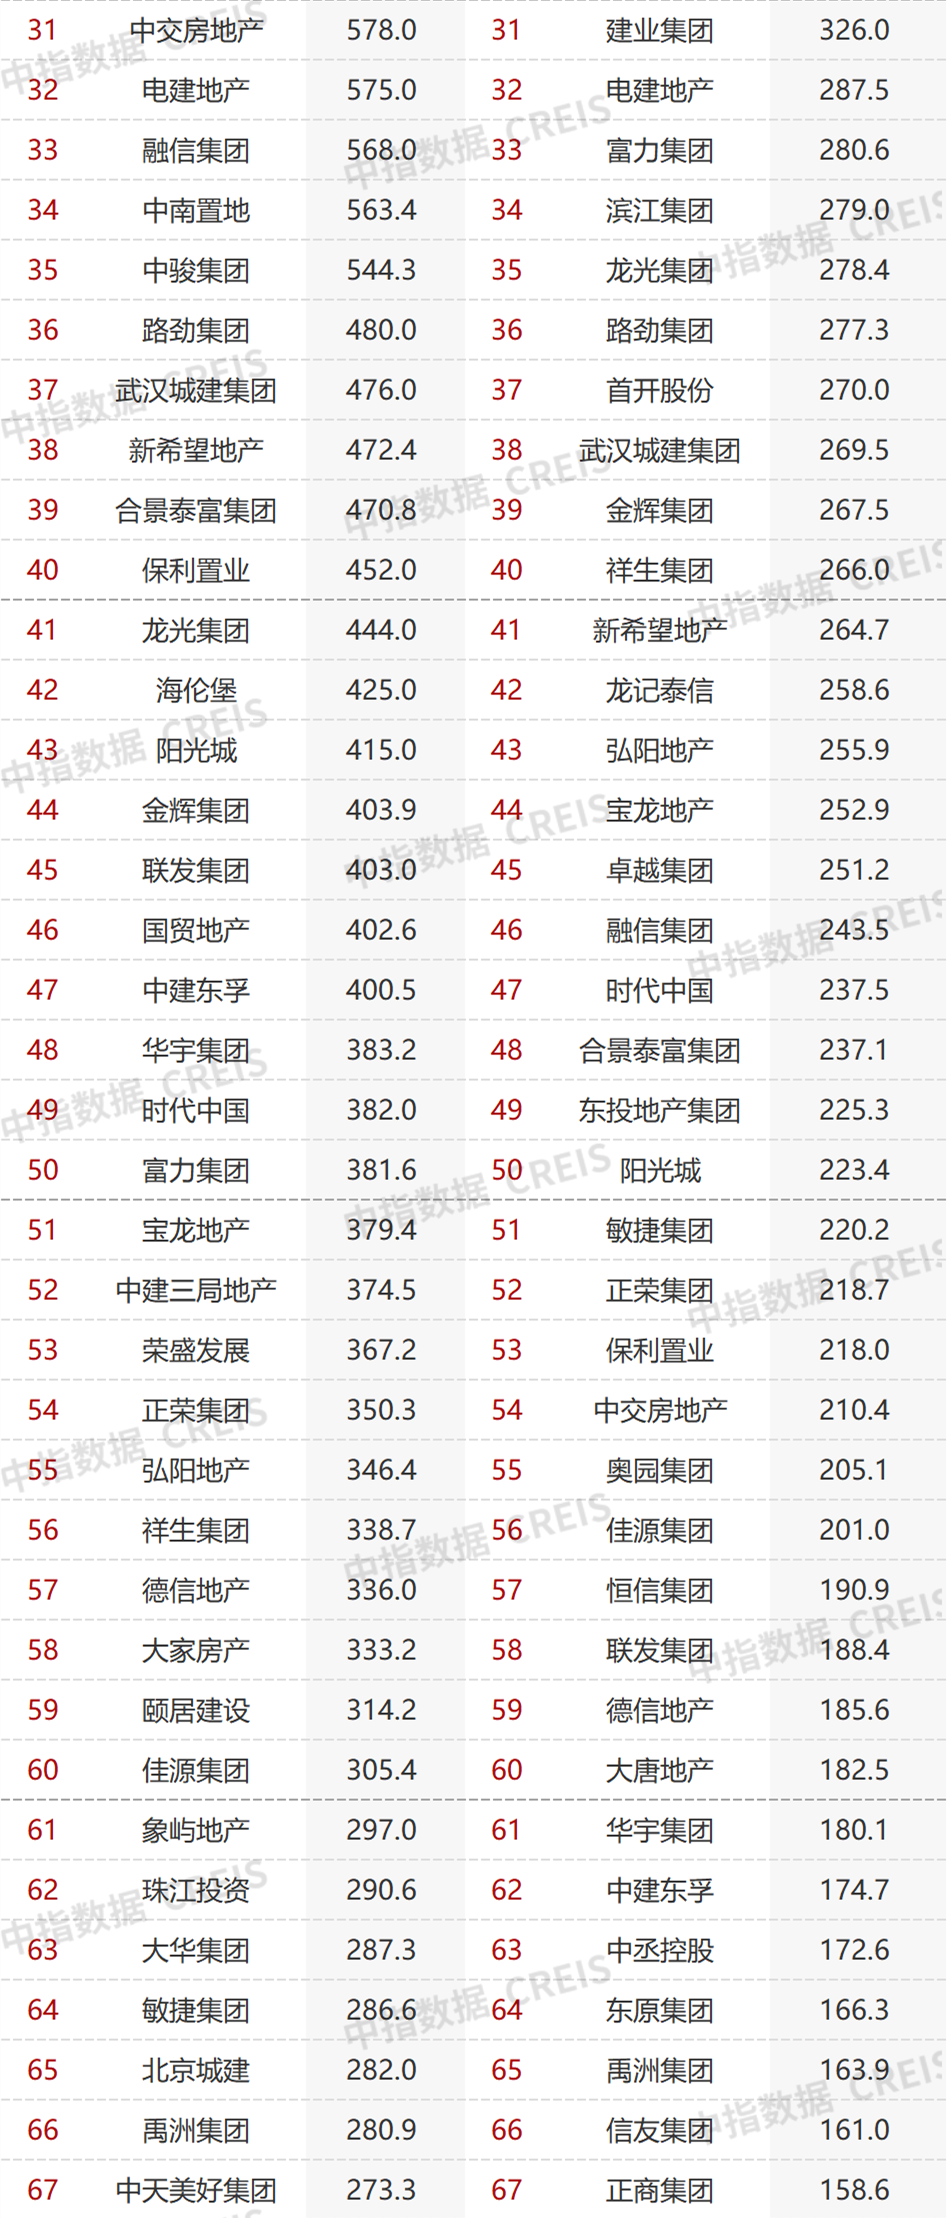 2022年1-11月中国房企销售业绩排行榜发布 TOP100房企销售额同比下降42.1%